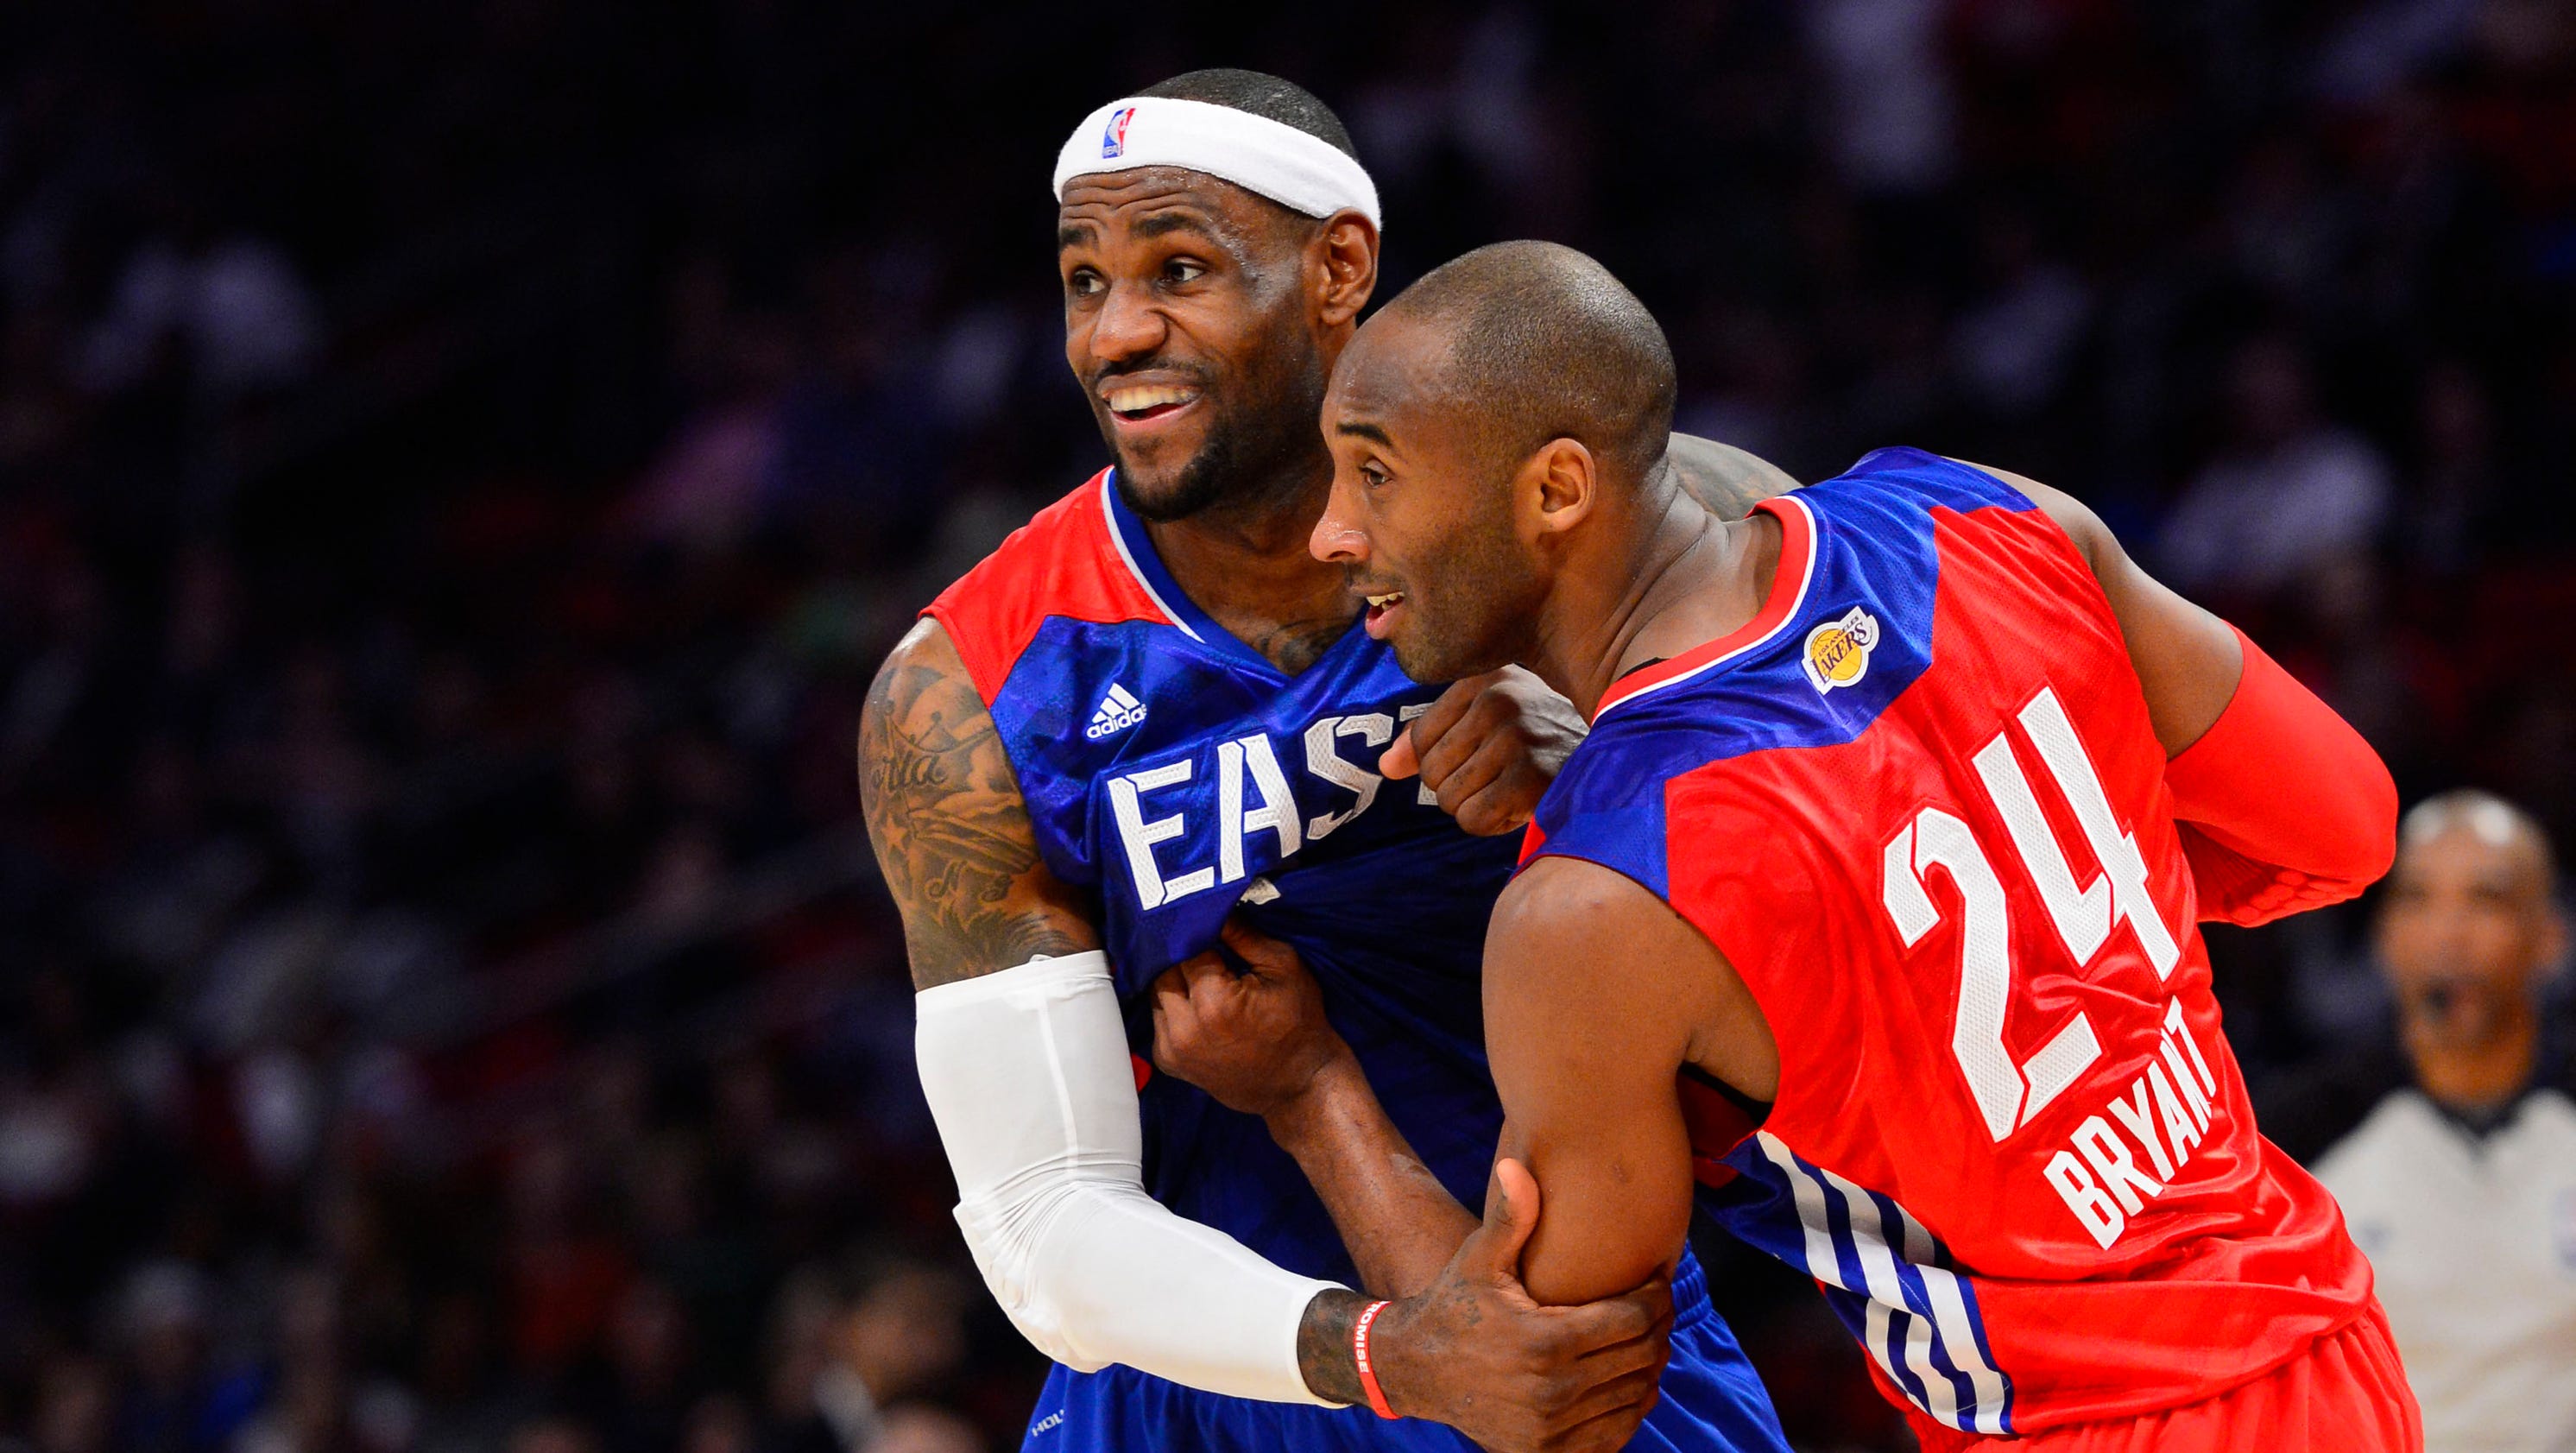 Kobe Bryant, LeBron James lead 2014 NBA All-Star Game starters